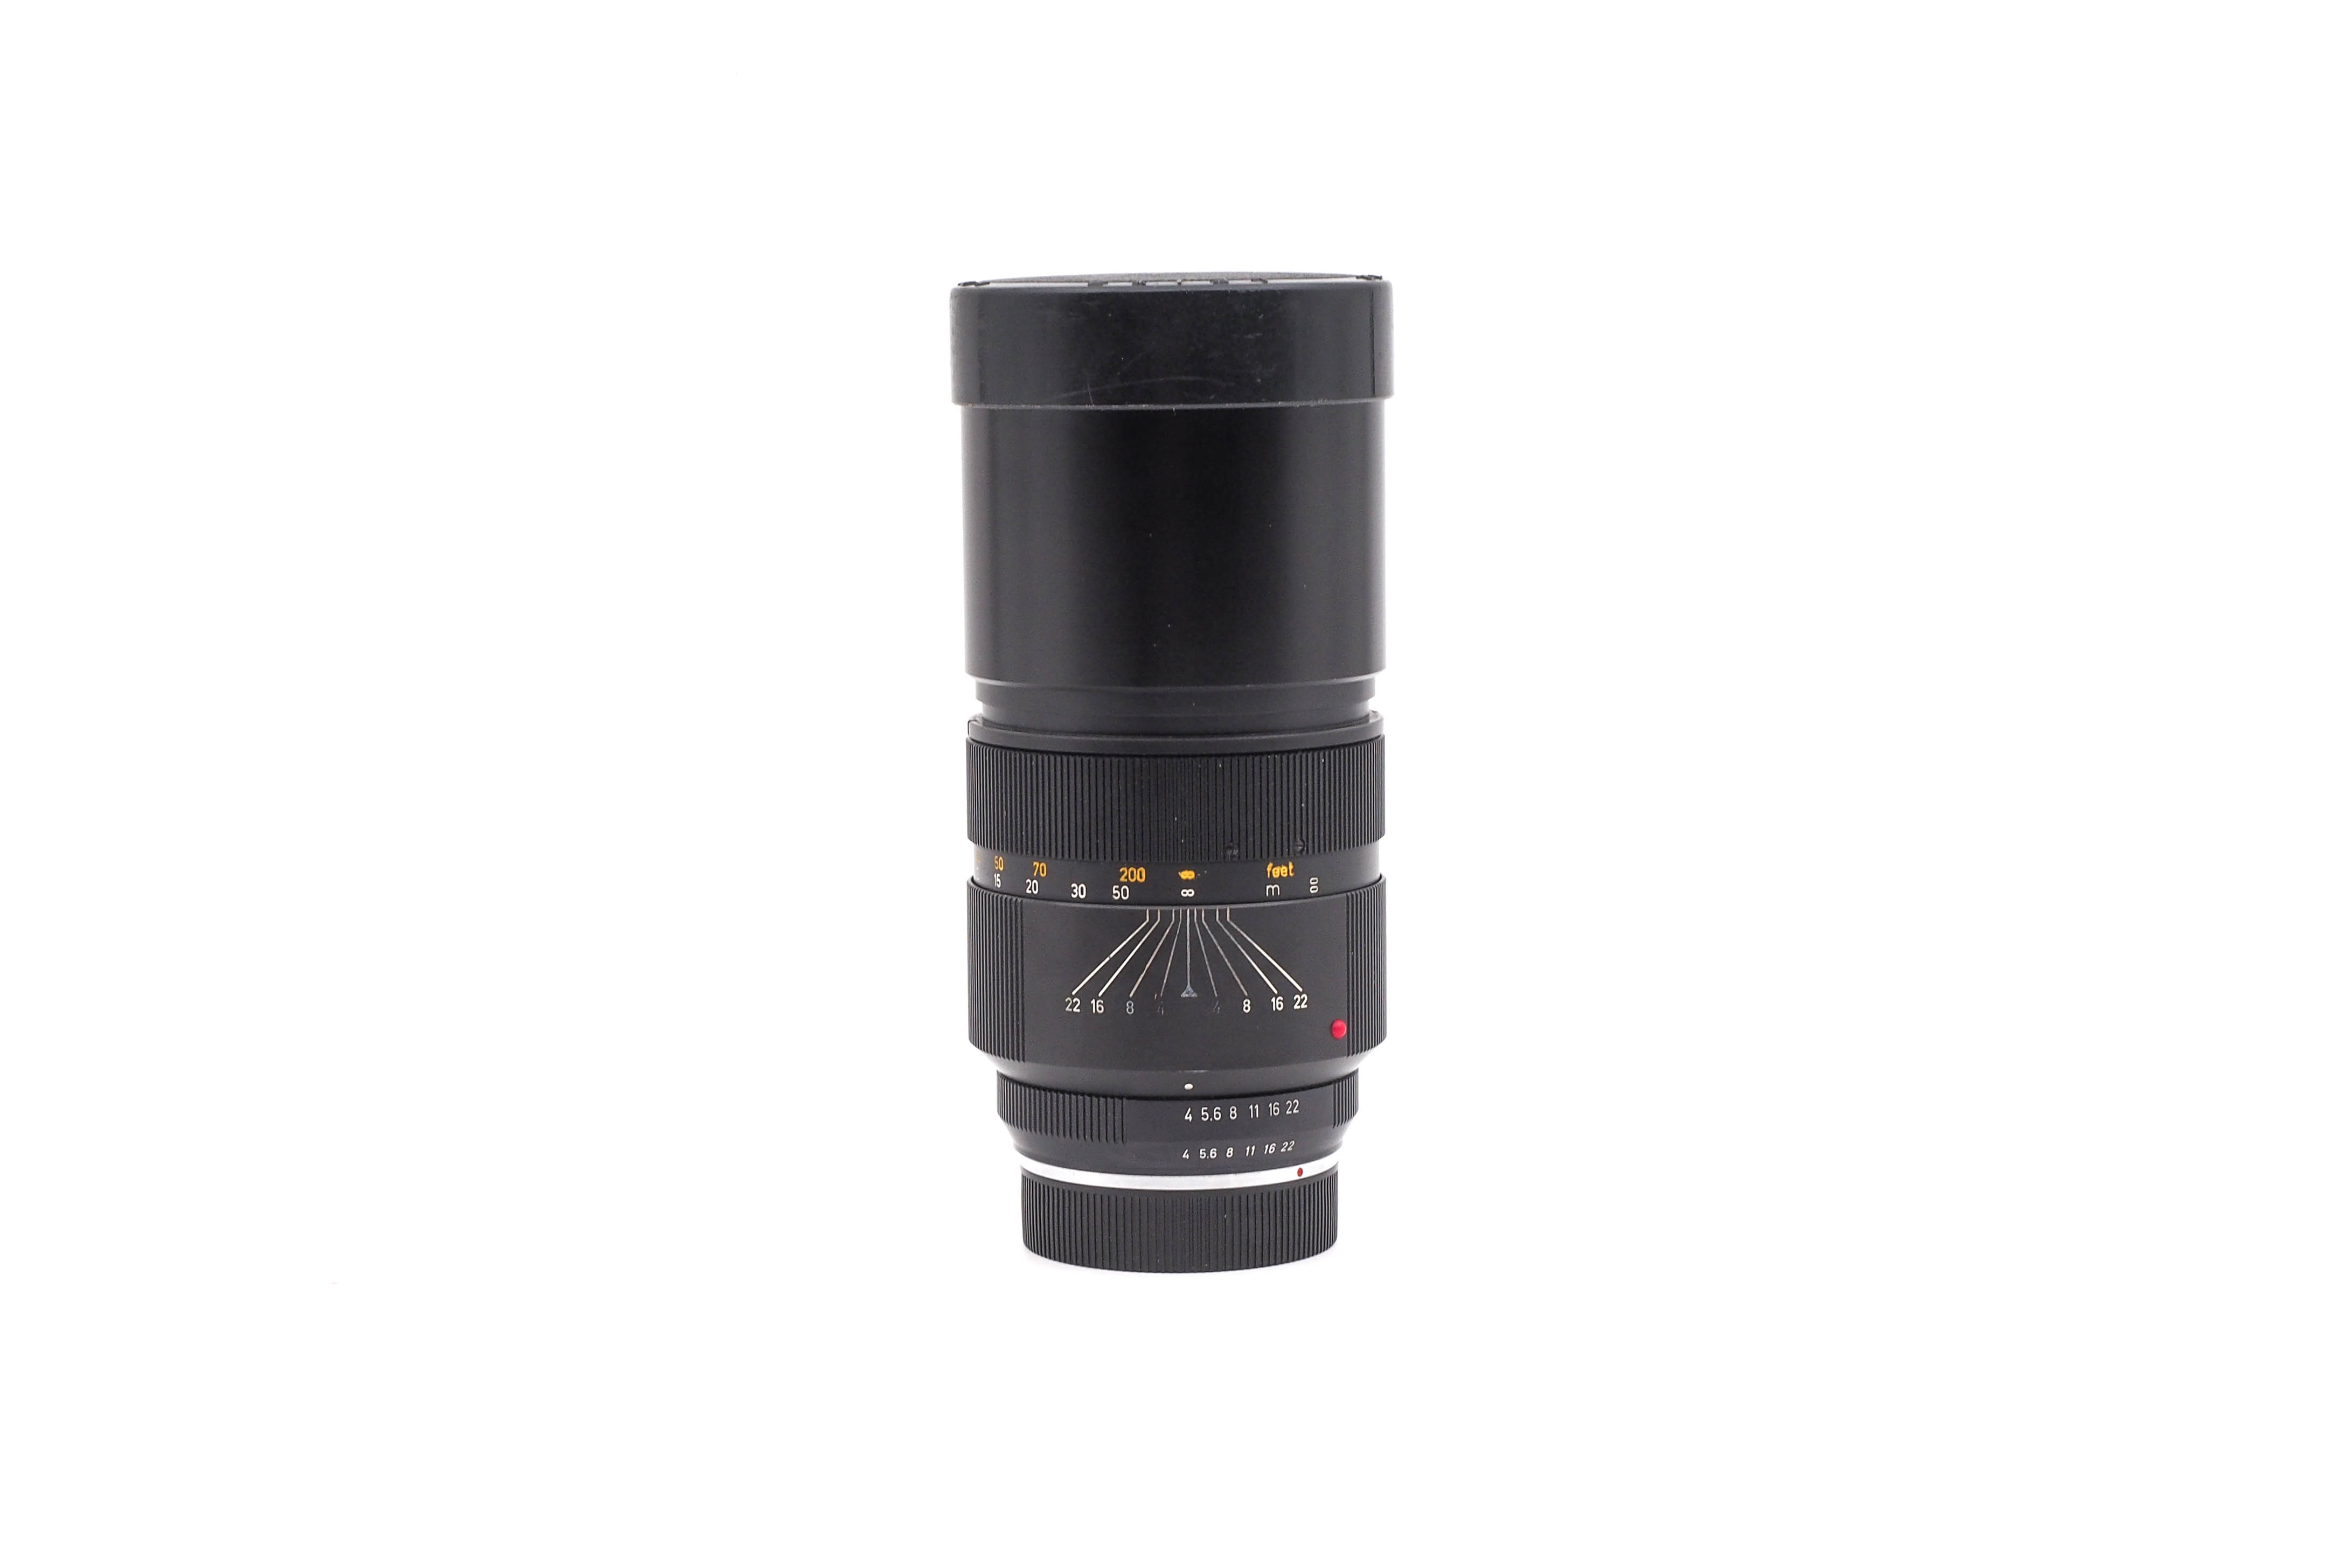 Leica 250mm f/4 Telyt-R 3 cam